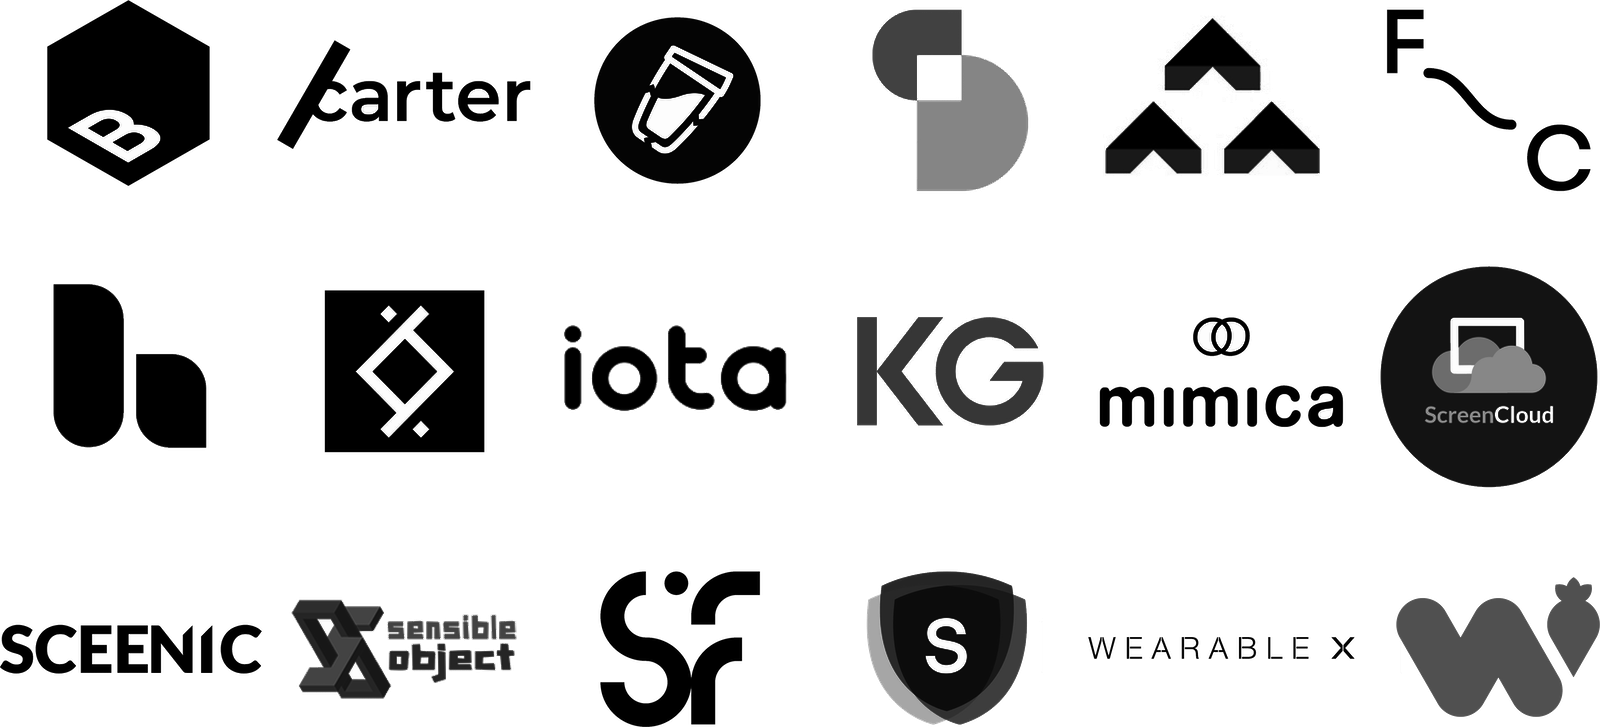 Startup logos